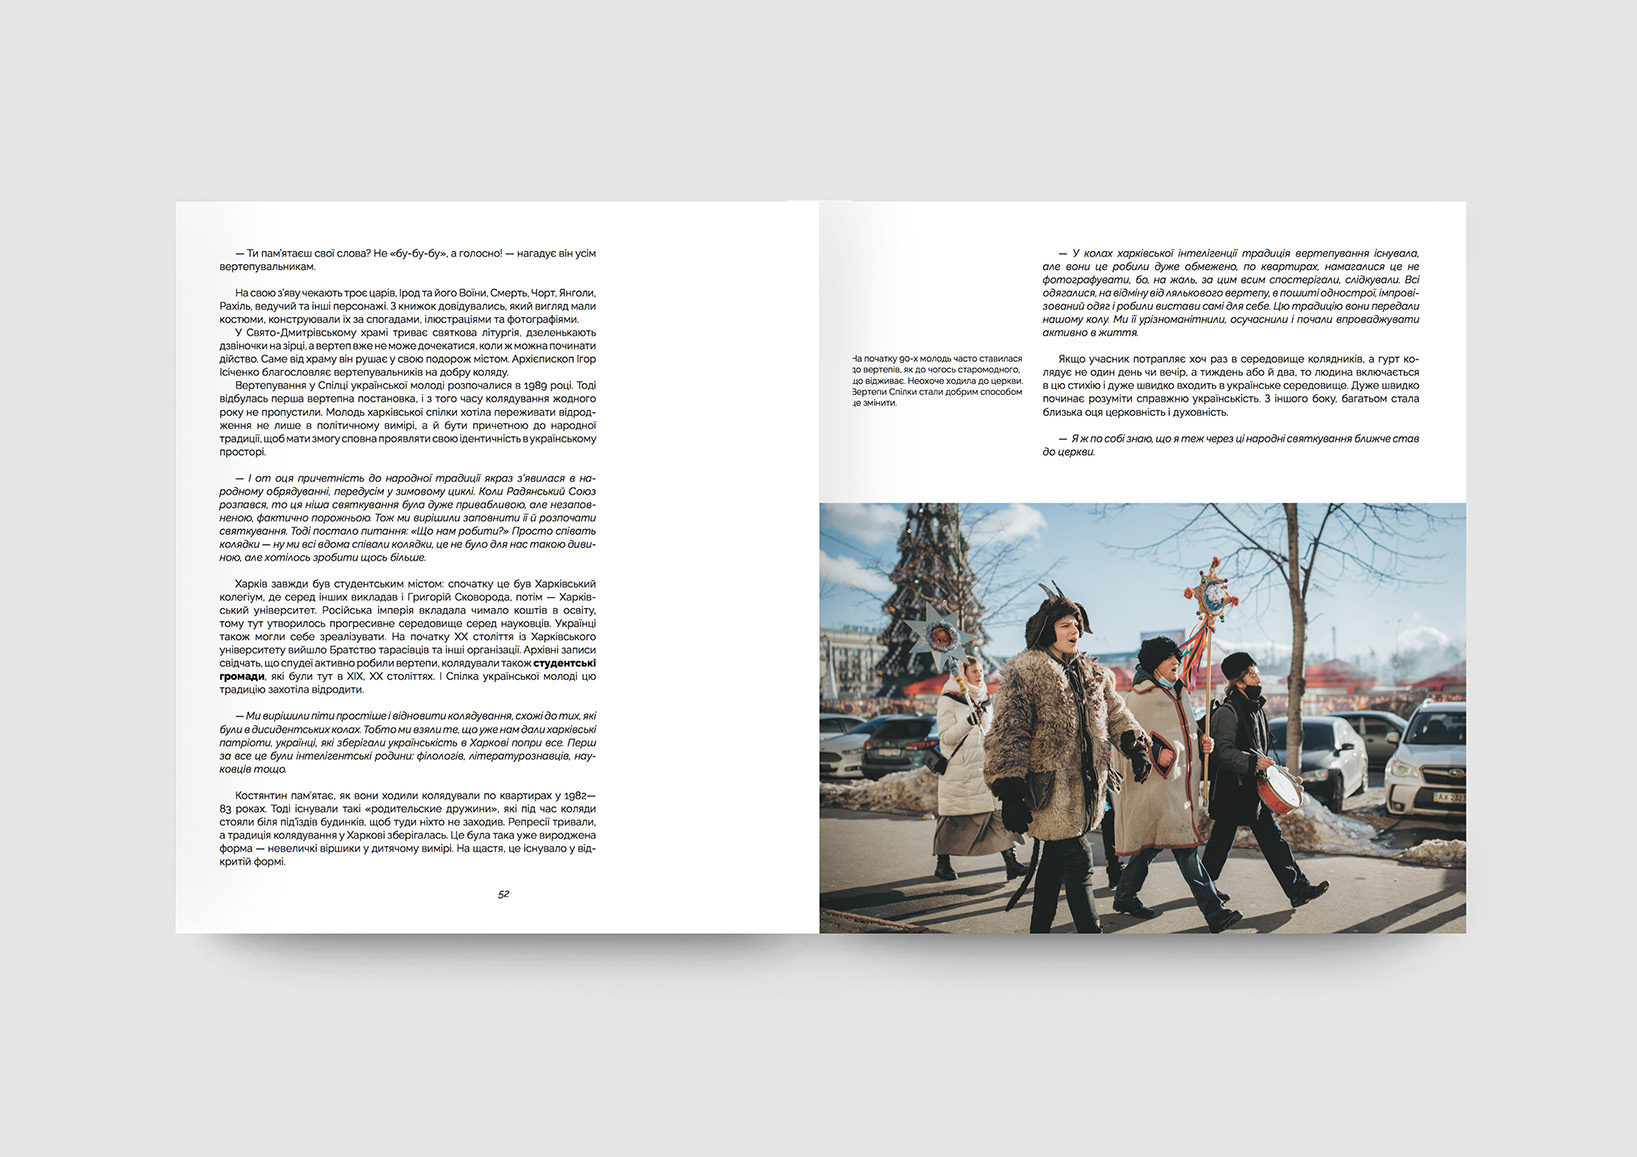 Ukraїner выпустил книгу про традиции зимних праздников в Украине